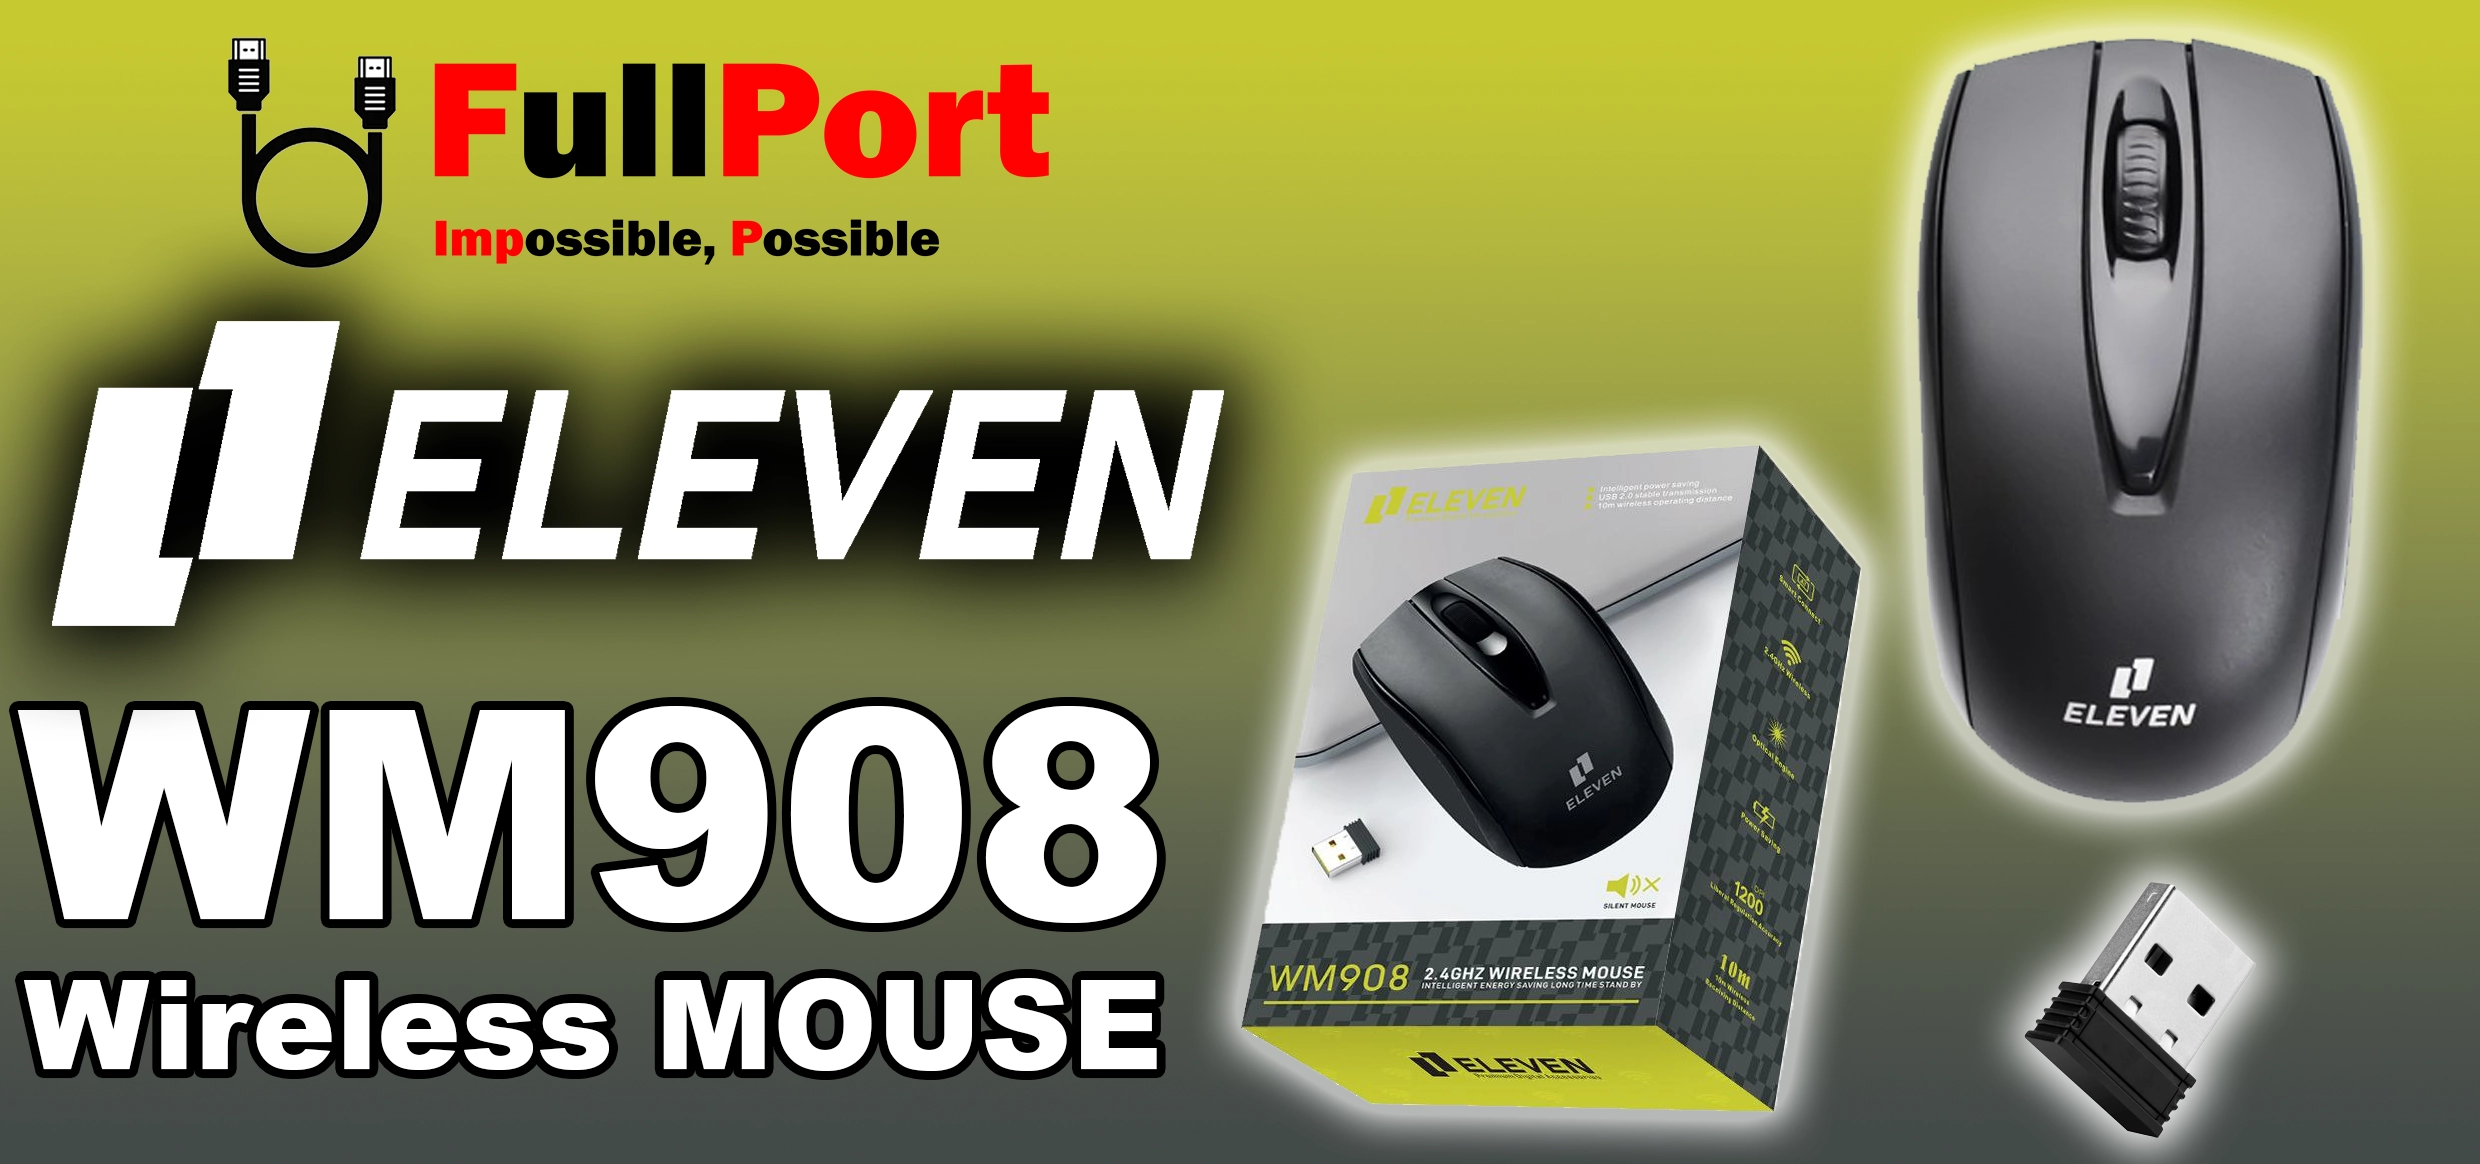 خرید اینترنتی موس بی سیم ایلون | ELEVEN مدل WM908 با گارانتی ایلون 1 سال از فروشگاه اینترنتی فول پورت